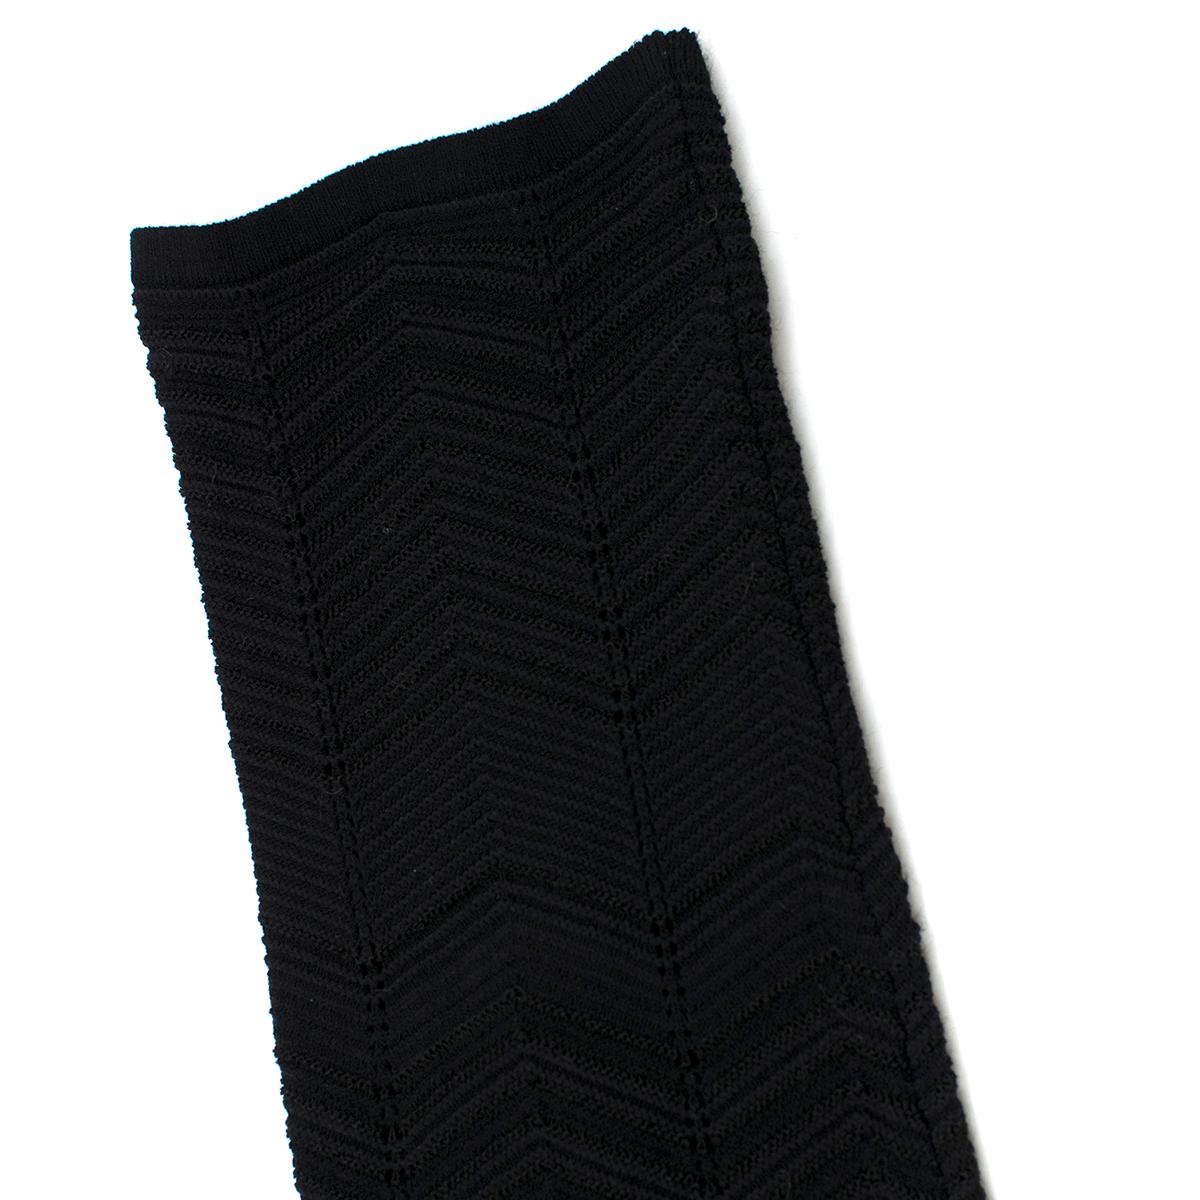 M Missoni Multicolor Knit A-line Dress Size IT 38 / US 0-2 4